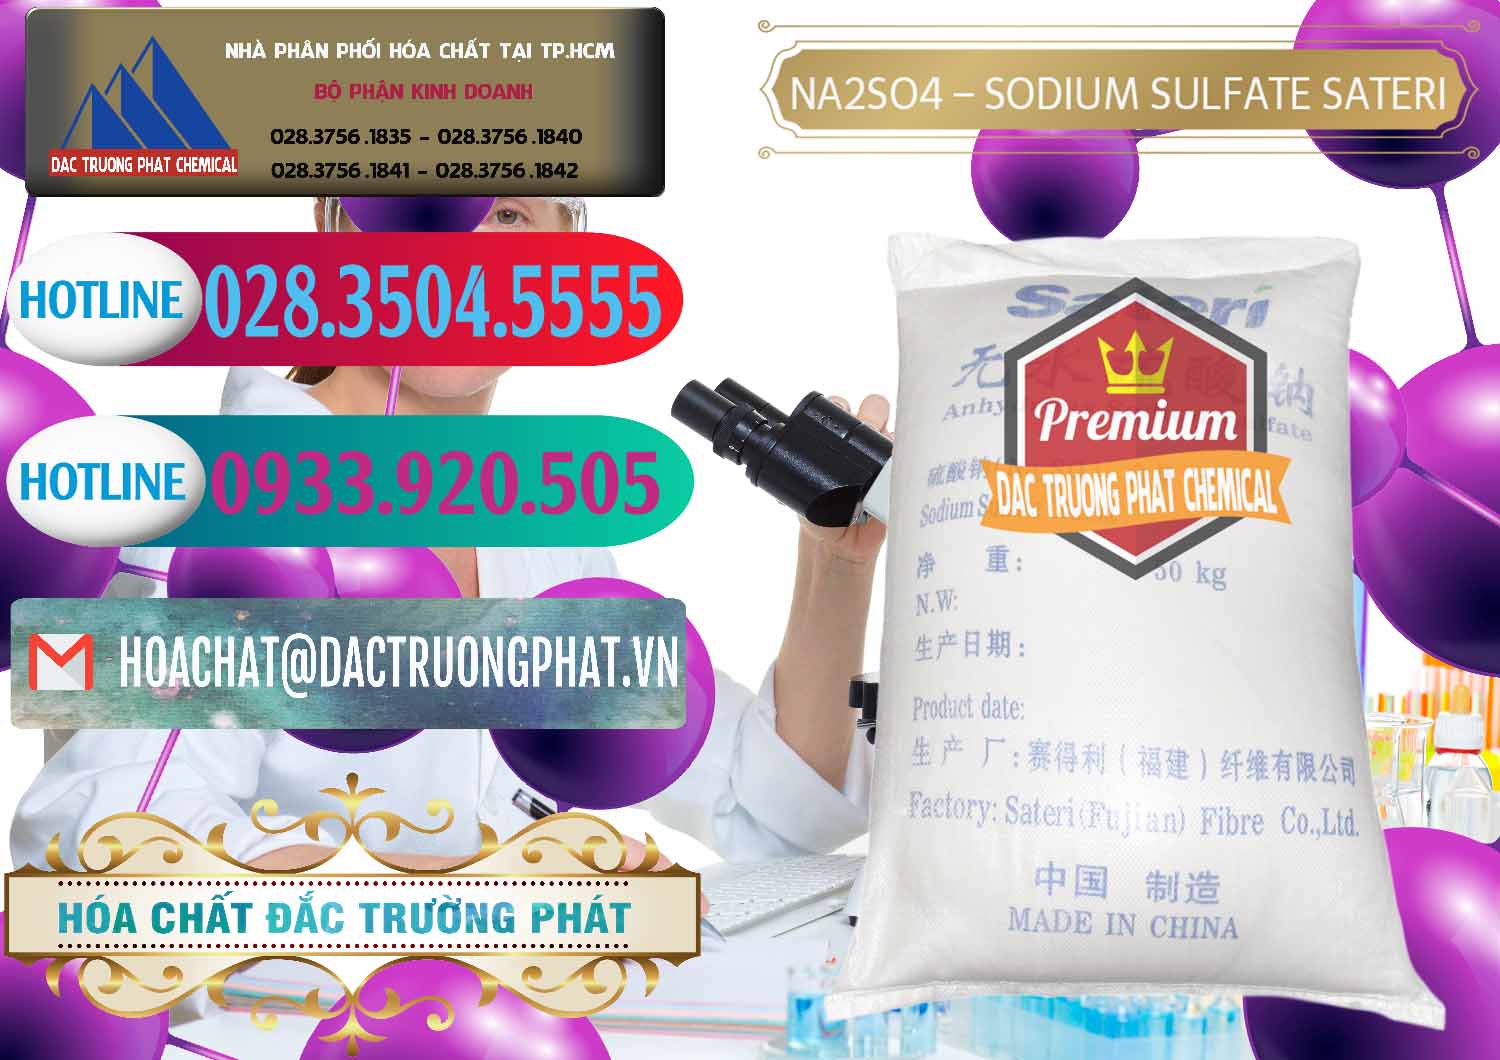 Cty chuyên bán ( cung cấp ) Sodium Sulphate - Muối Sunfat Na2SO4 Sateri Trung Quốc China - 0100 - Kinh doanh ( phân phối ) hóa chất tại TP.HCM - truongphat.vn